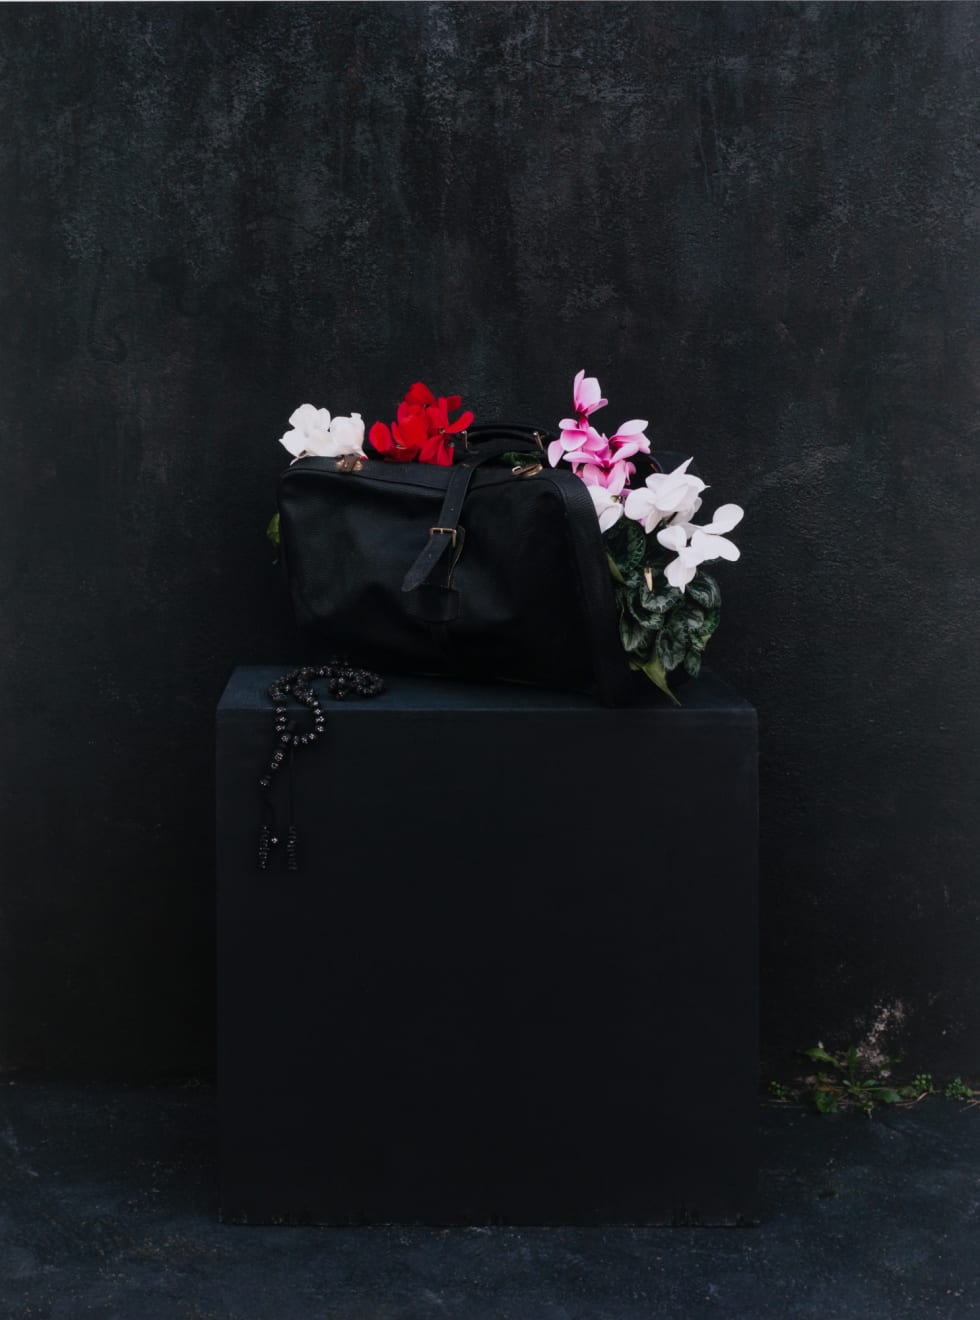 Maïmouna Guerresi, A Bag of Flowers, 2021